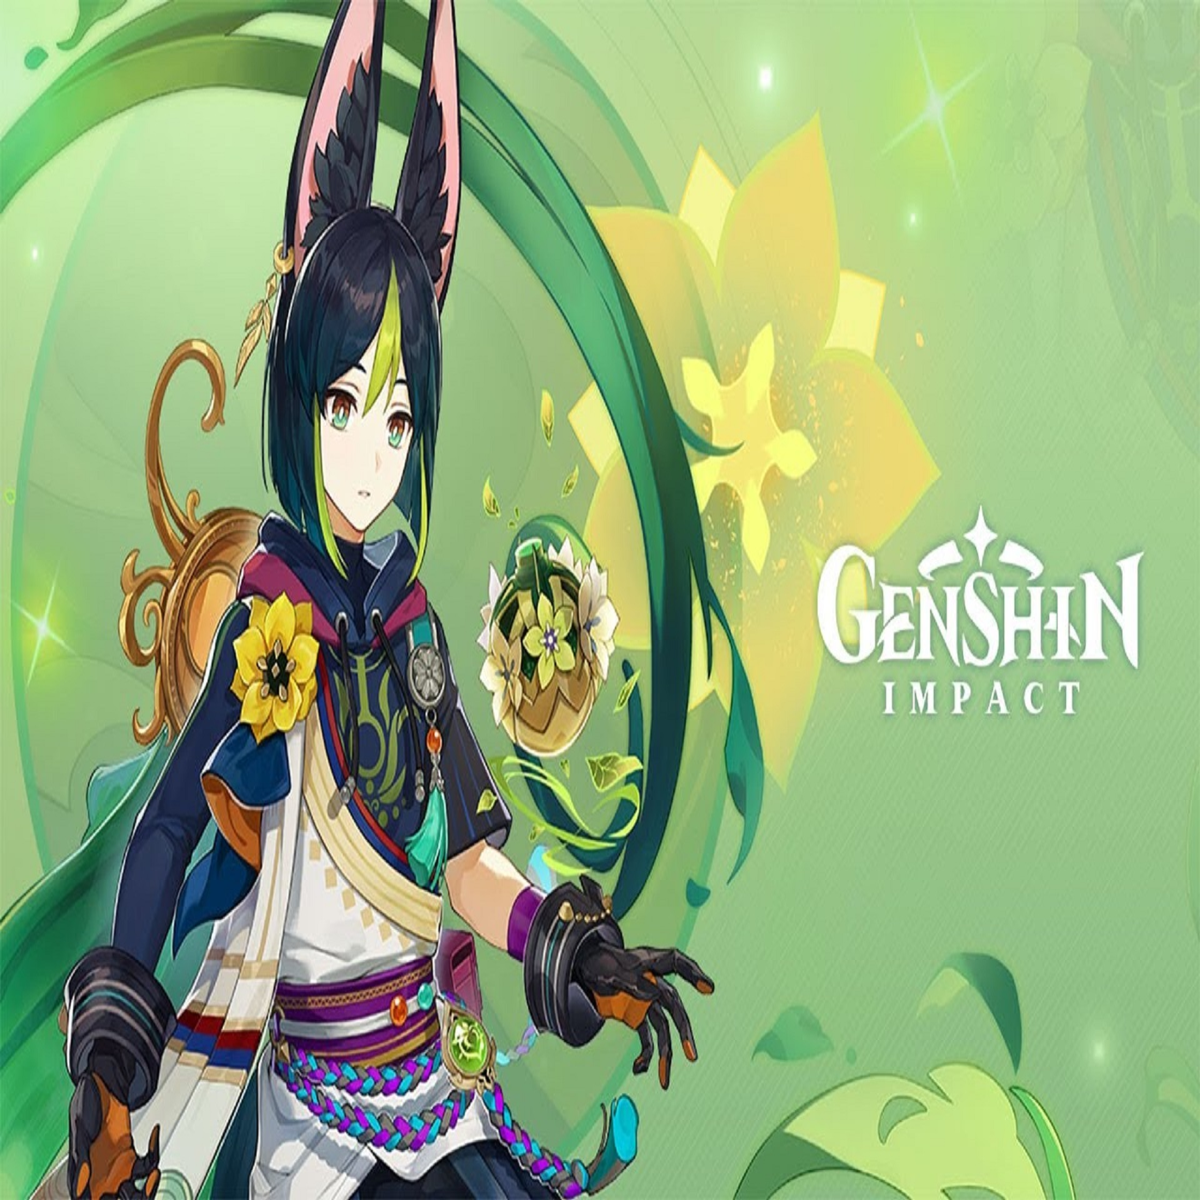 Conheça Tighnari e Collei, novos personagens Dendro de Genshin Impact